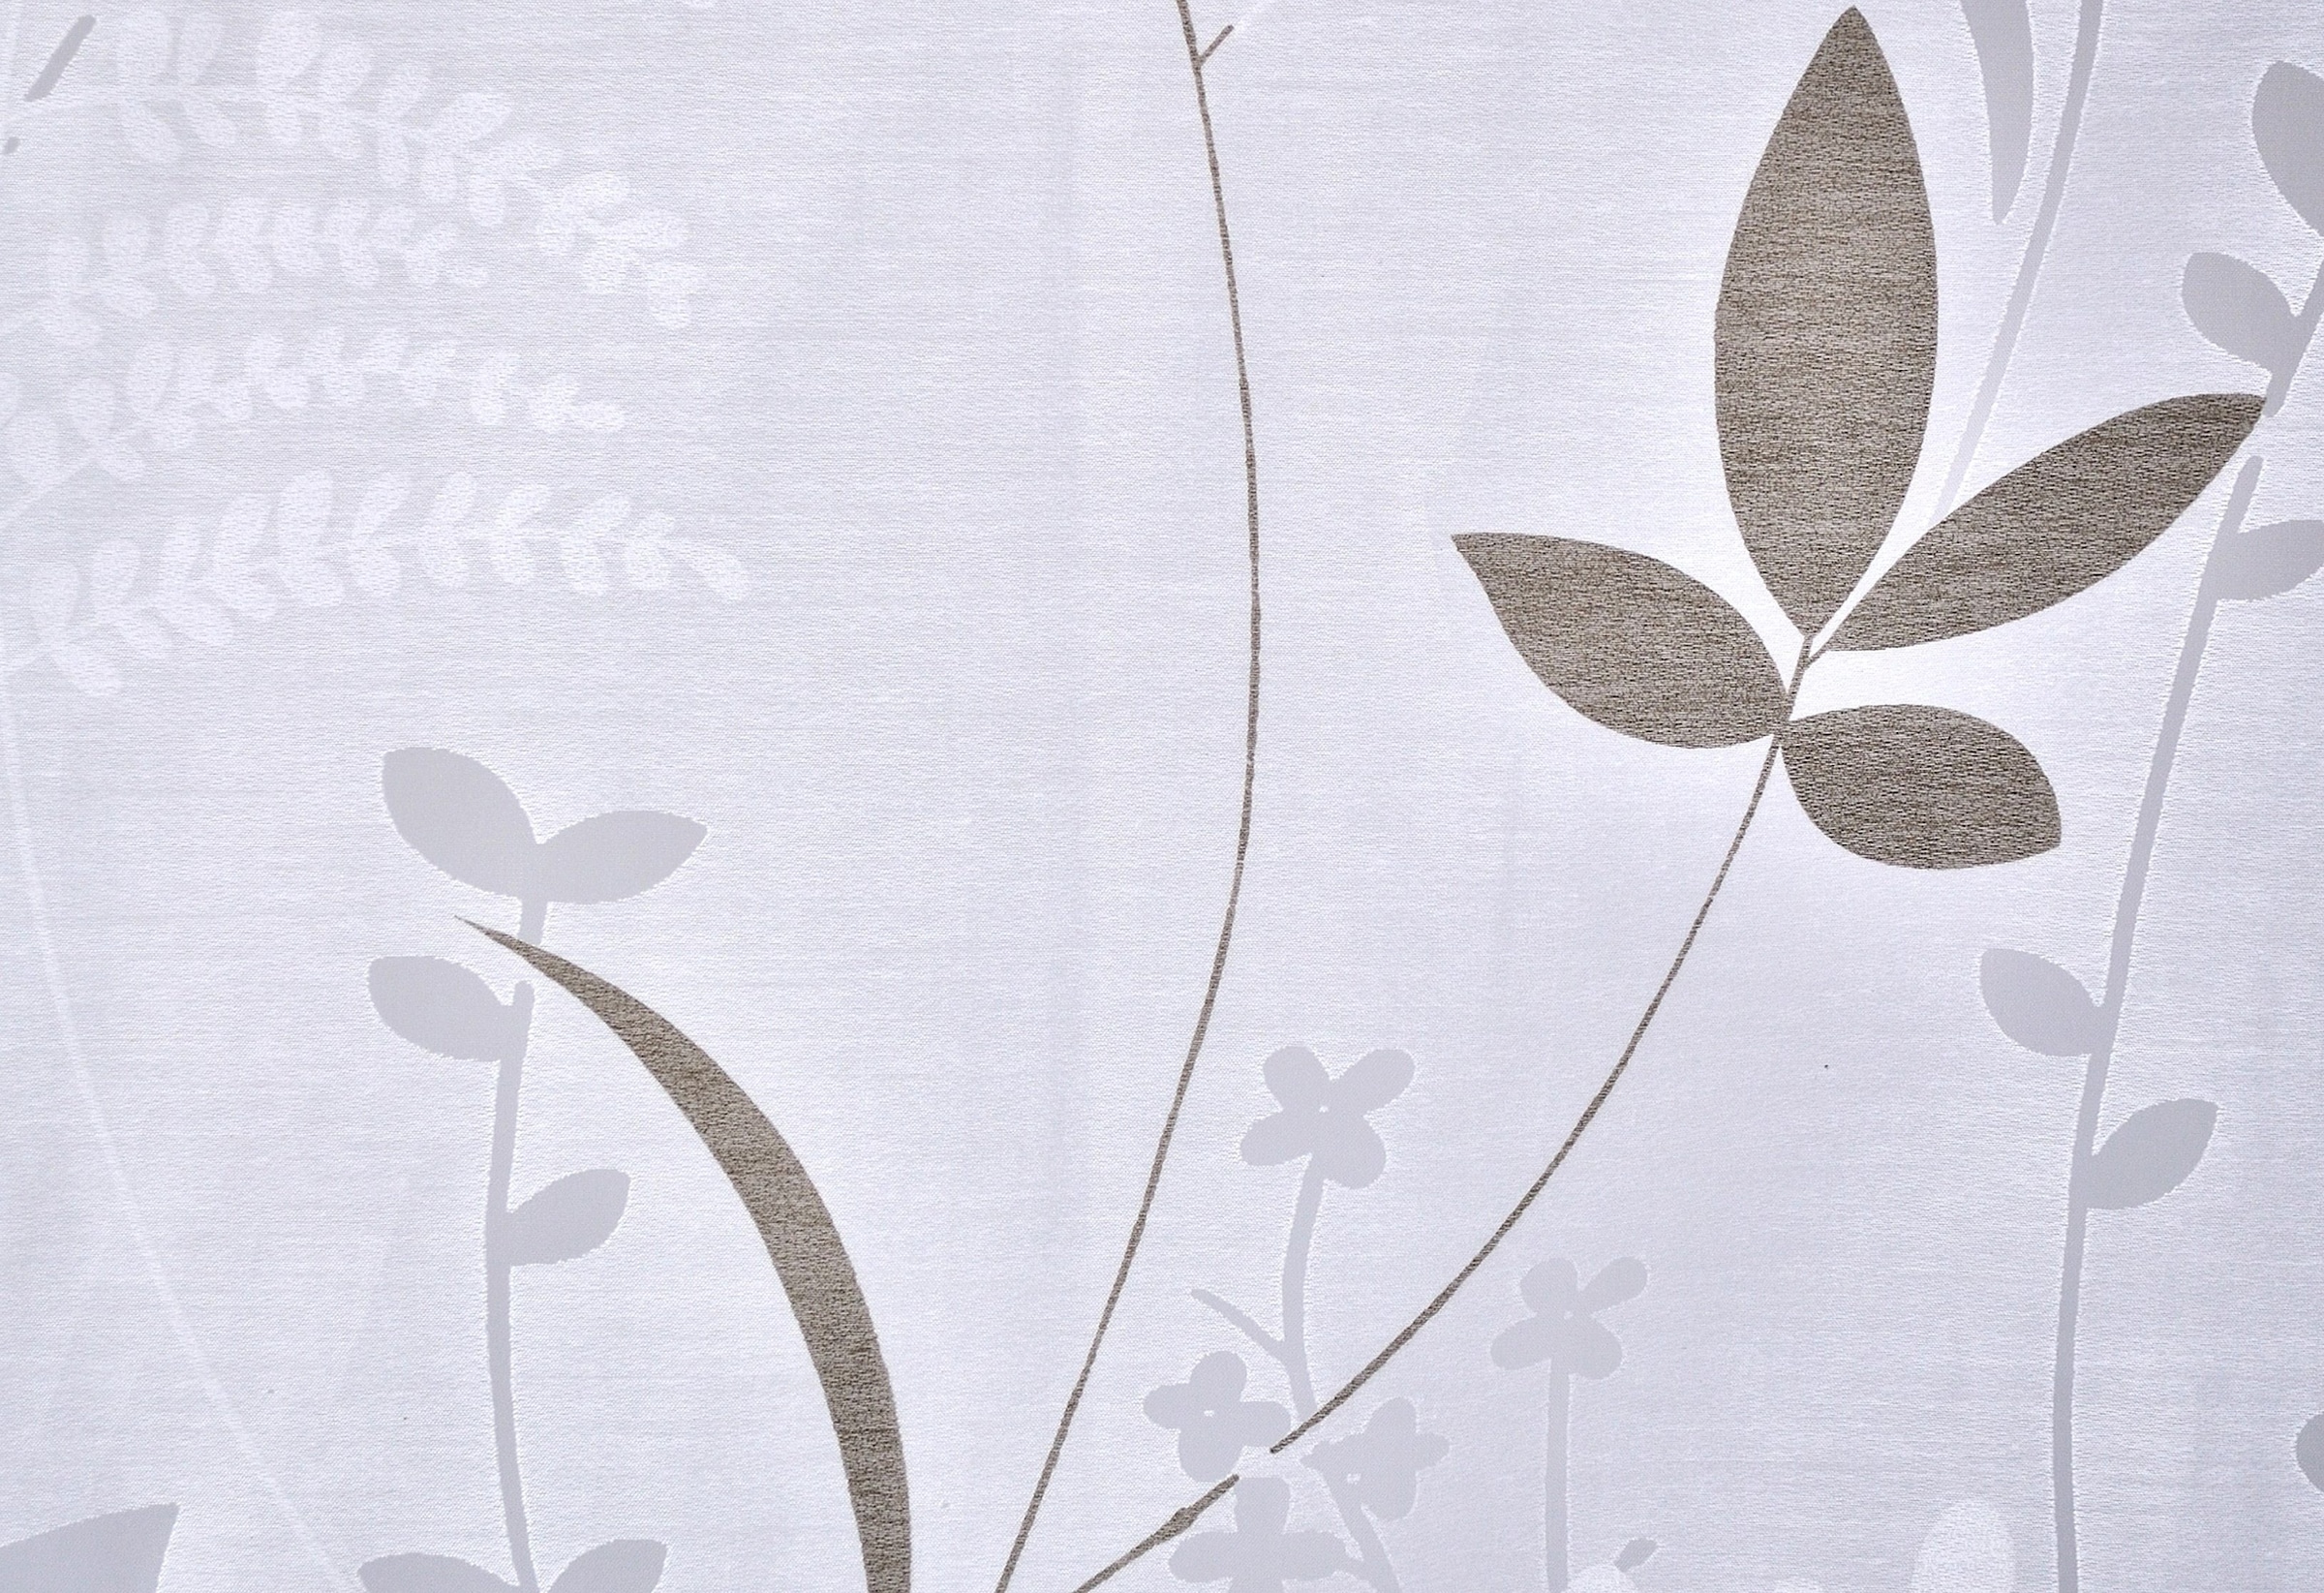 Kutti Raffrollo »Dandelion Marc«, mit Hakenaufhängung, ohne Bohren, weiß, blickdicht, Ausbrenner, gemustert, floral, pflegeleicht